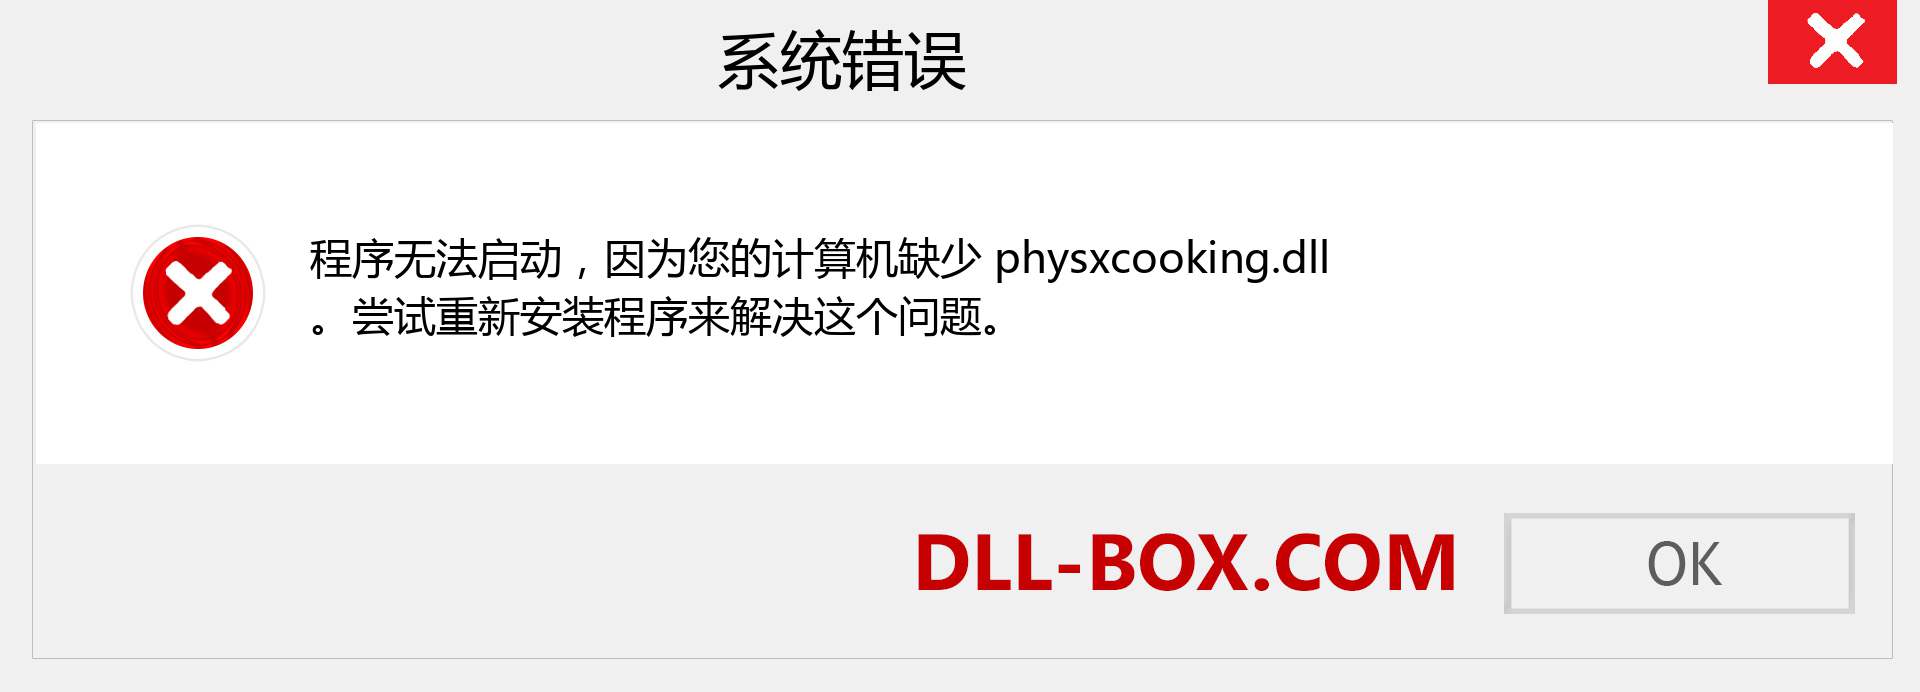 physxcooking.dll 文件丢失？。 适用于 Windows 7、8、10 的下载 - 修复 Windows、照片、图像上的 physxcooking dll 丢失错误